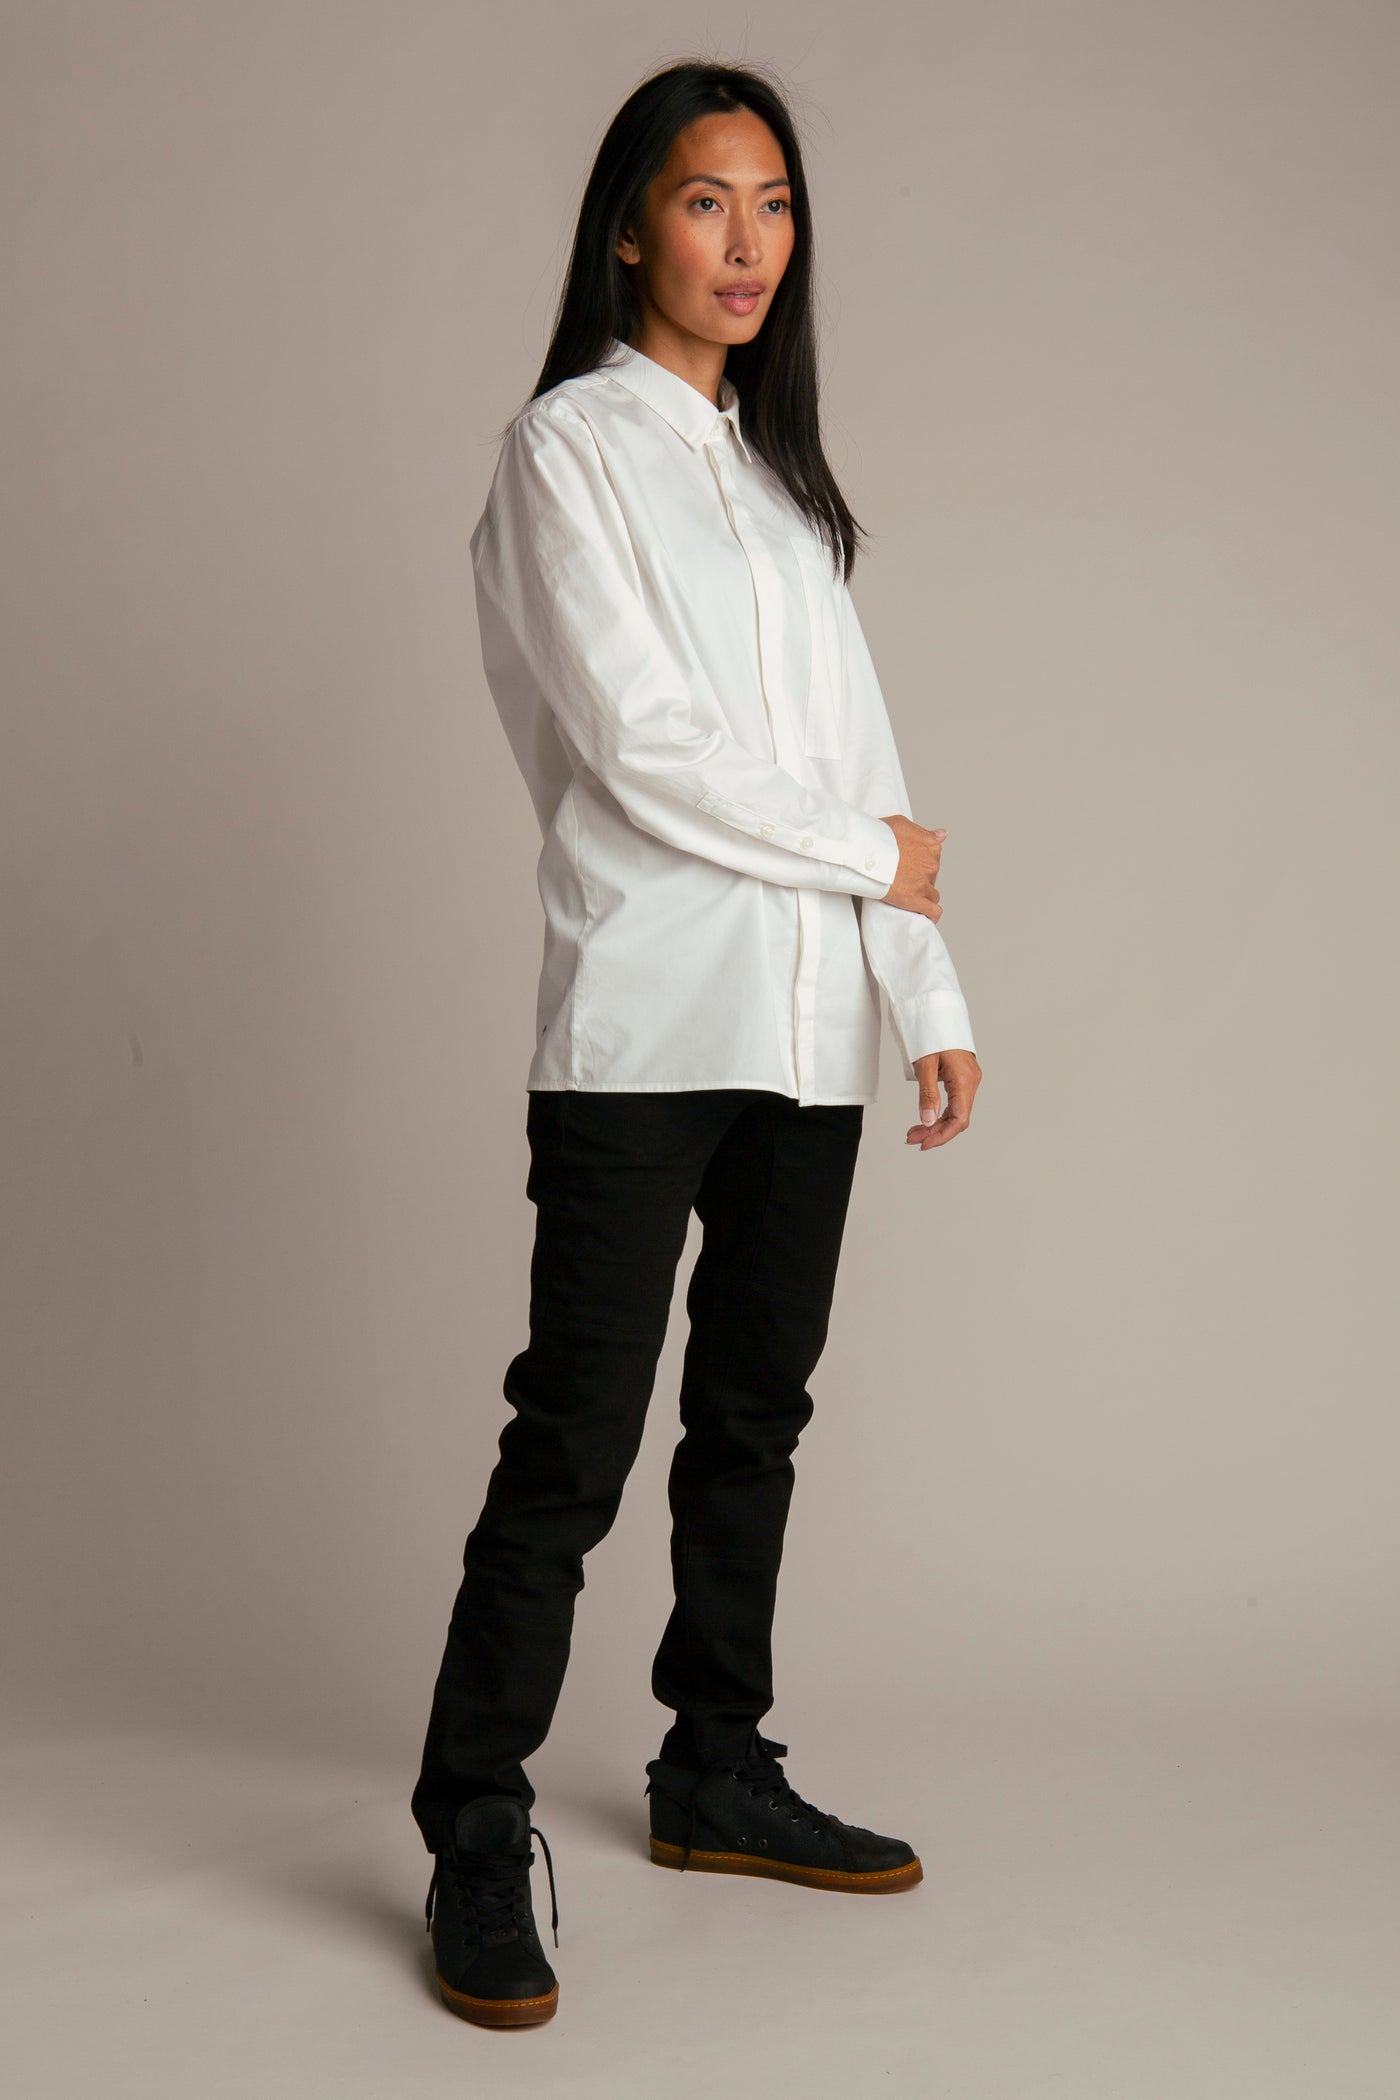 Regular fit shirt for women | White